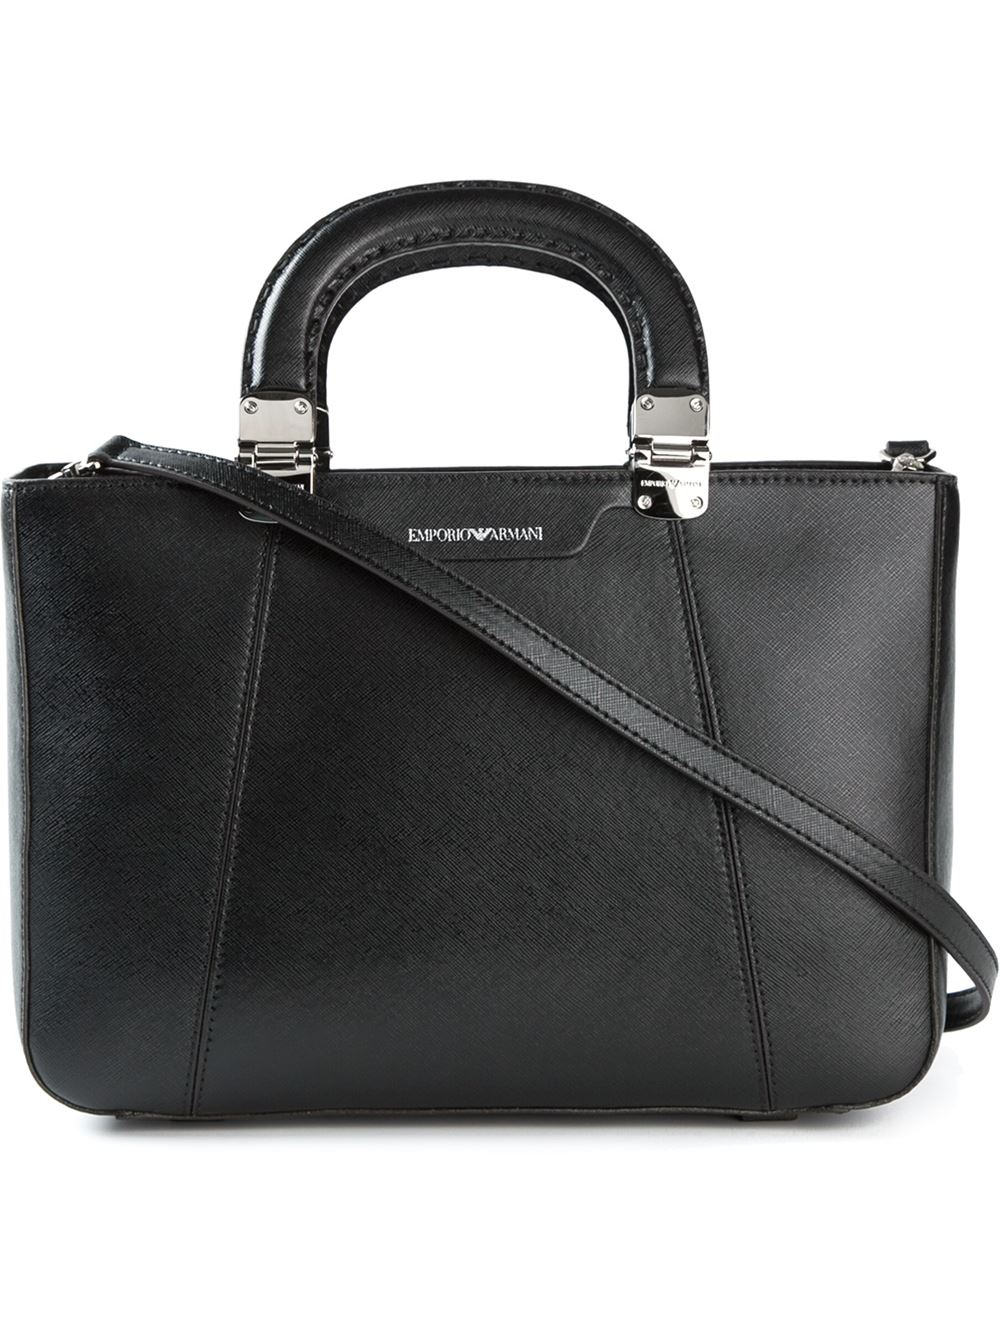 Lyst - Emporio Armani Structured Tote Bag in Black